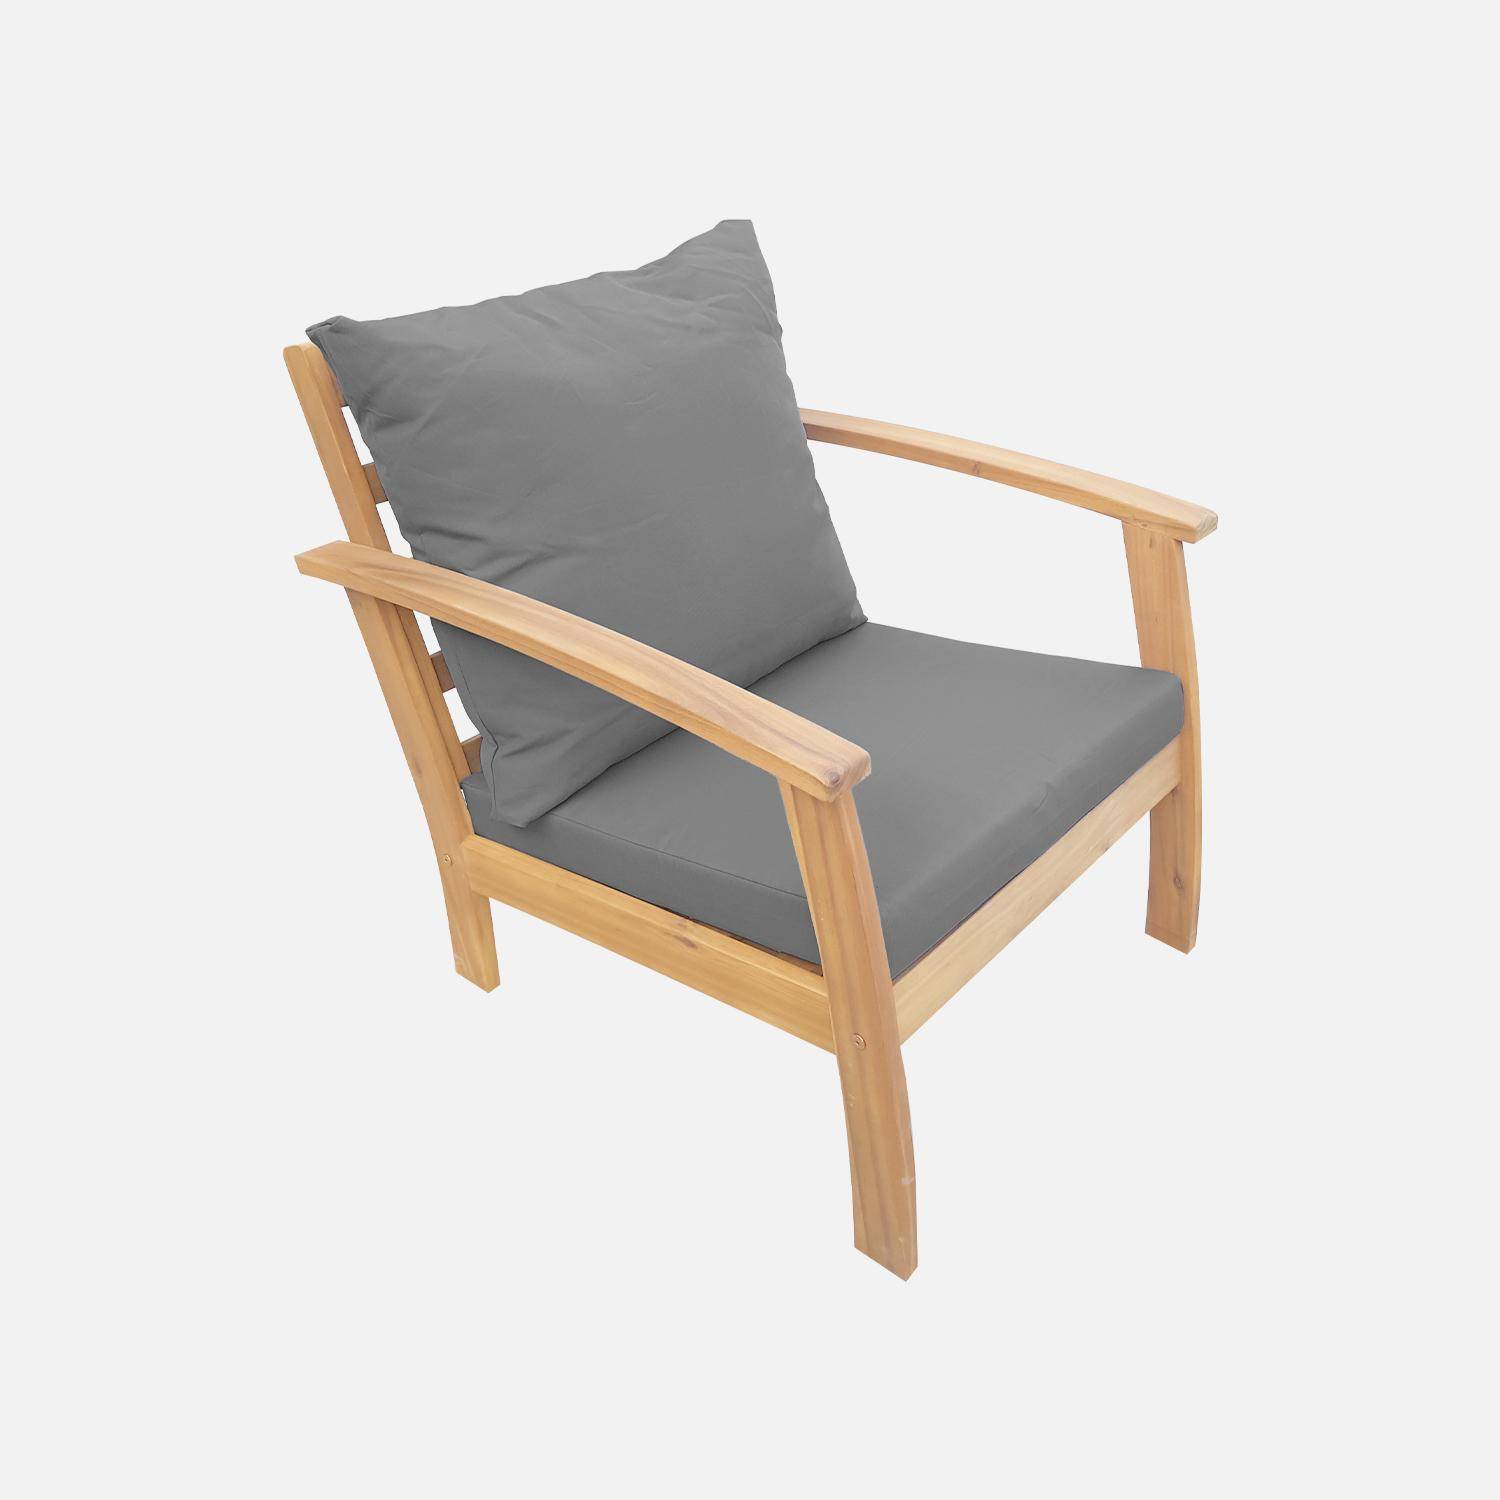 Gartengarnitur aus Holz 4 Sitze - Ushuaïa - graue Kissen, Sofa, Sessel und Couchtisch aus Akazie, Design Photo4